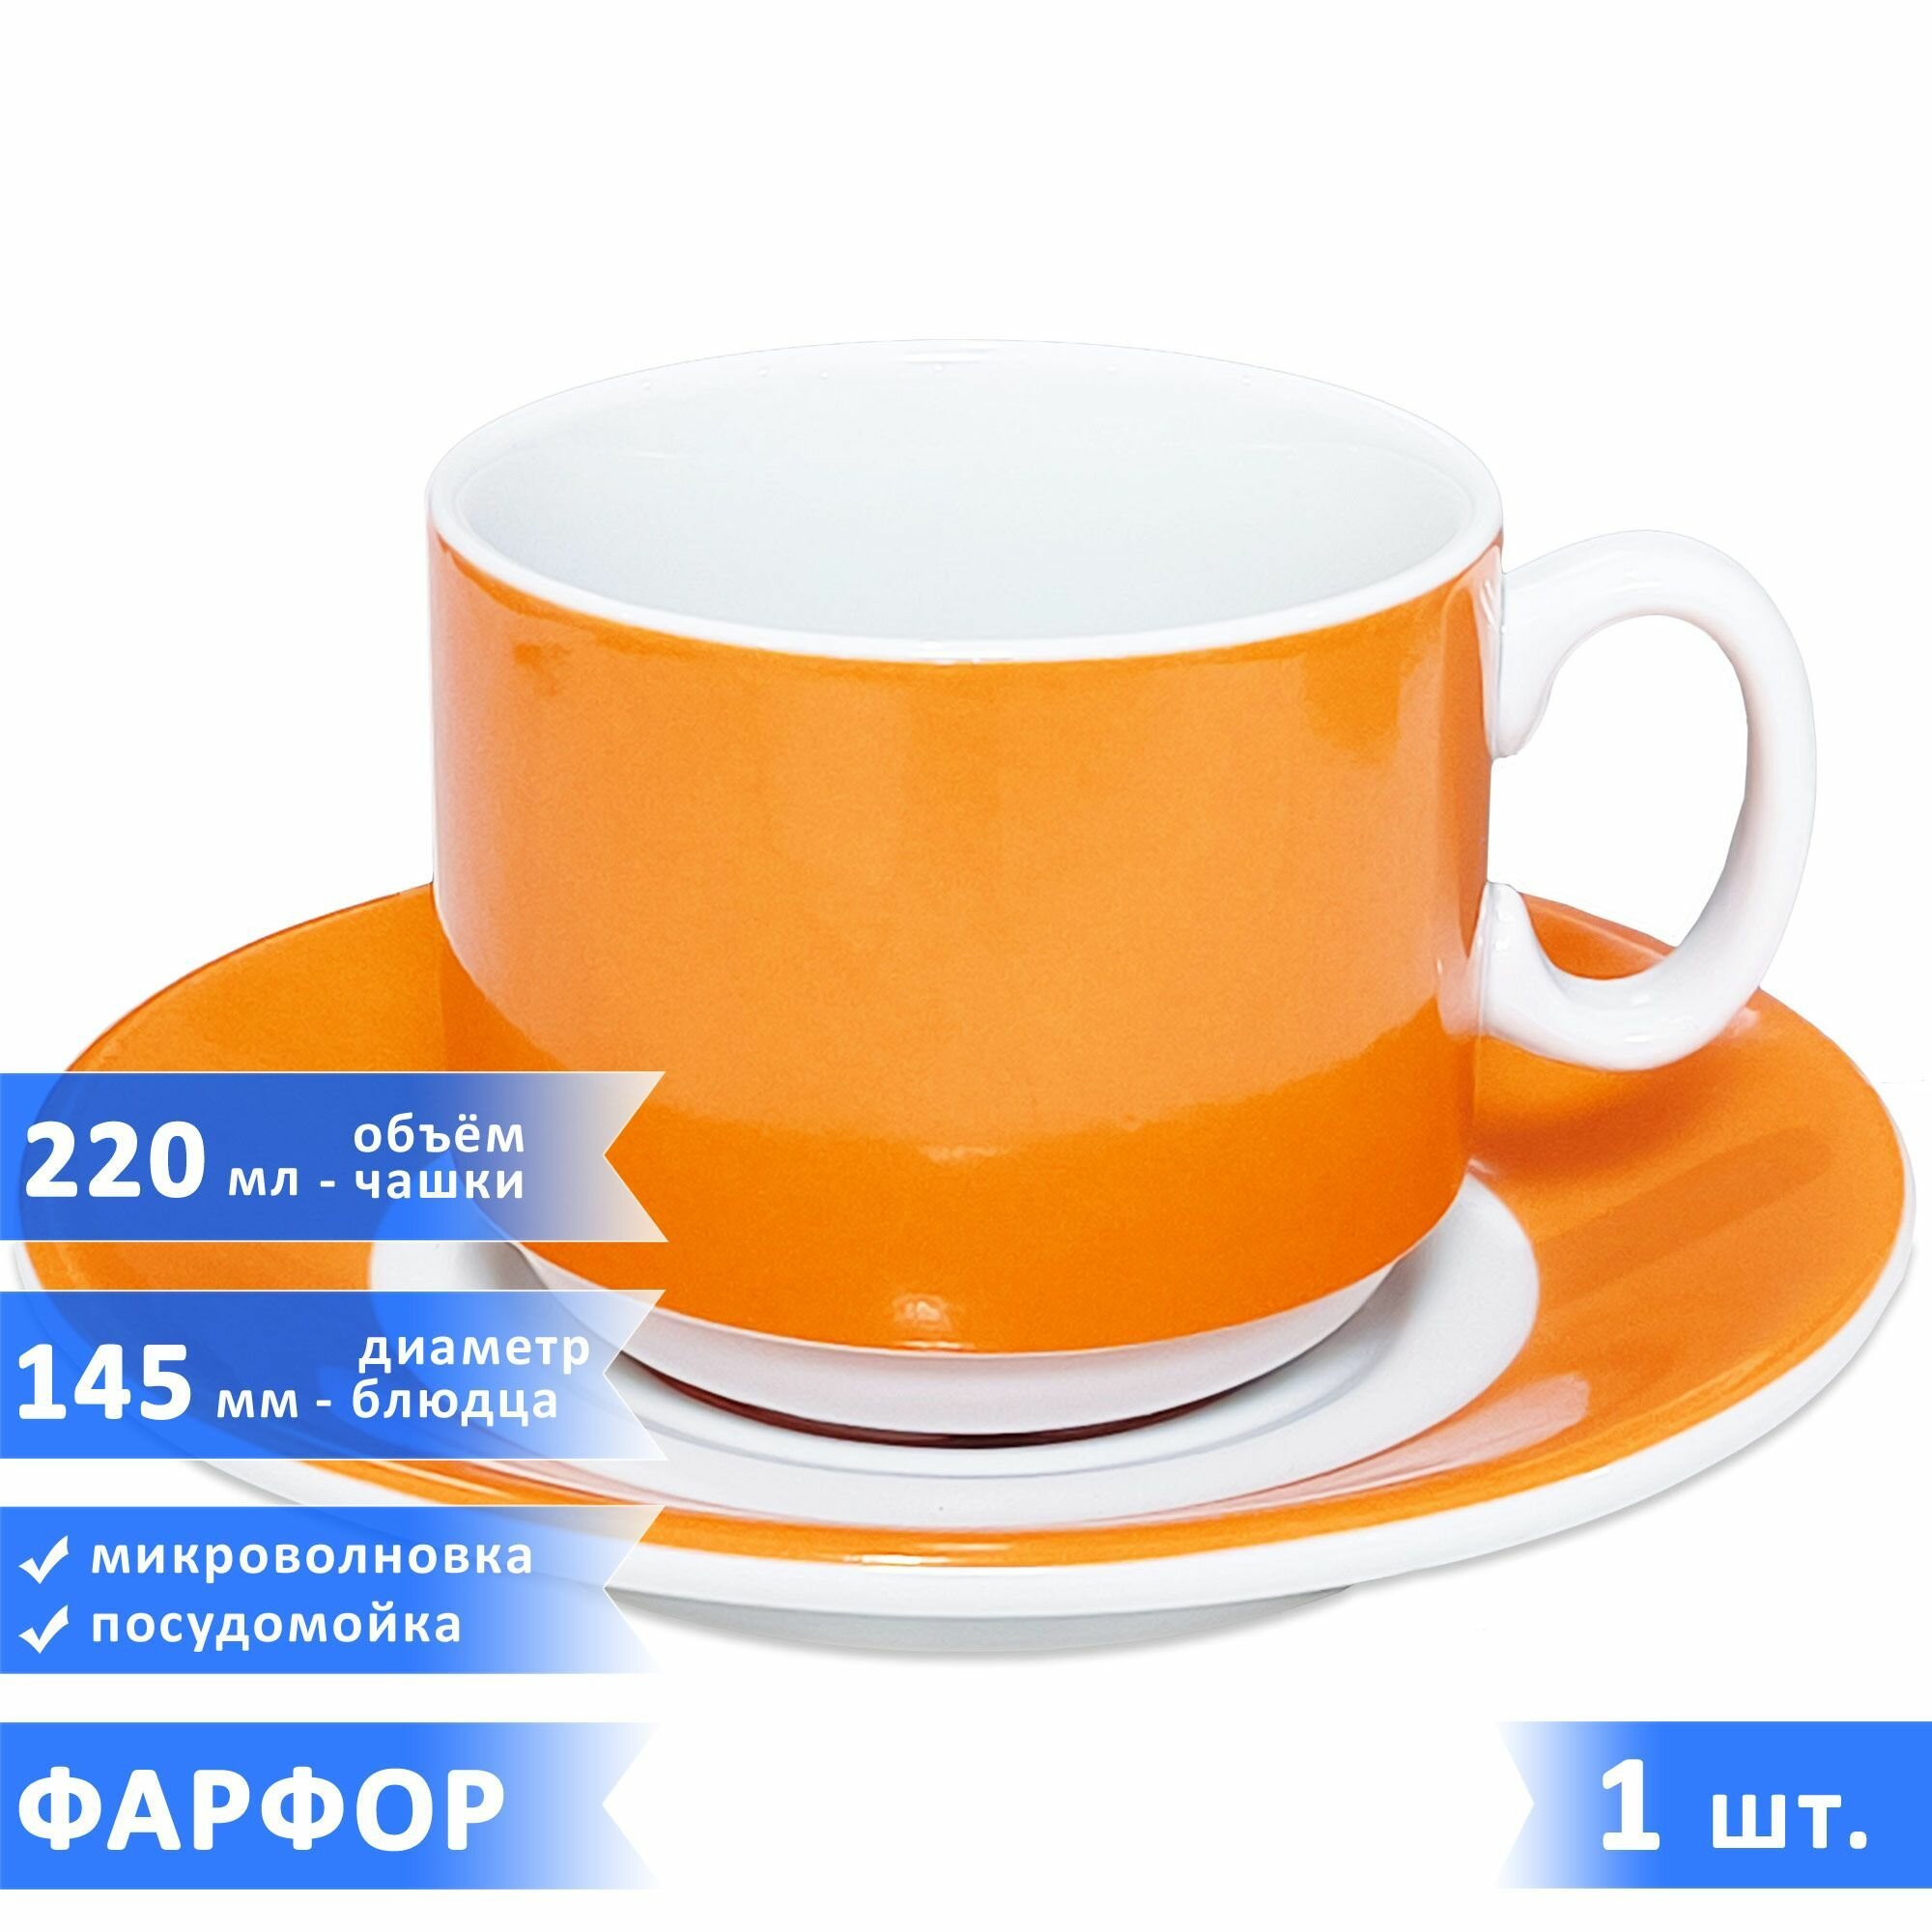 Чайная/кофейная пара "Экспресс Sunrise", набор чашка 220 мл + блюдце, фарфор, оранжевые, 1 шт.